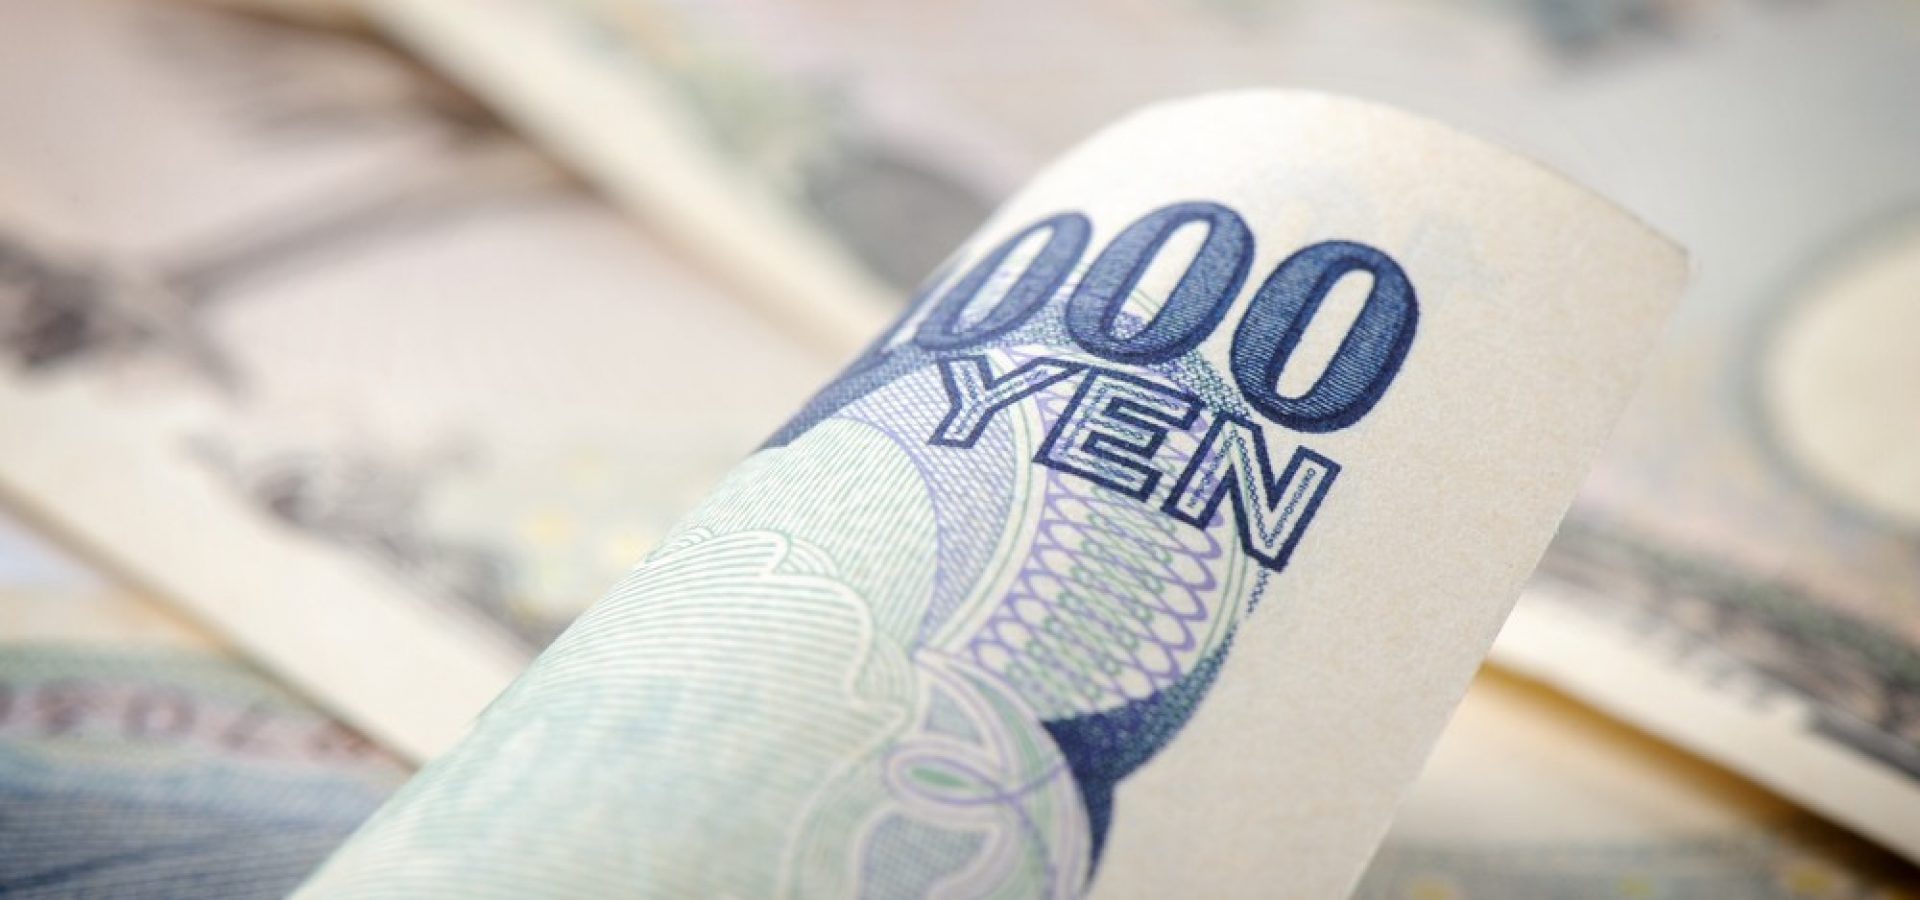 Wibest – Japan Yen: Japanese yen bills.